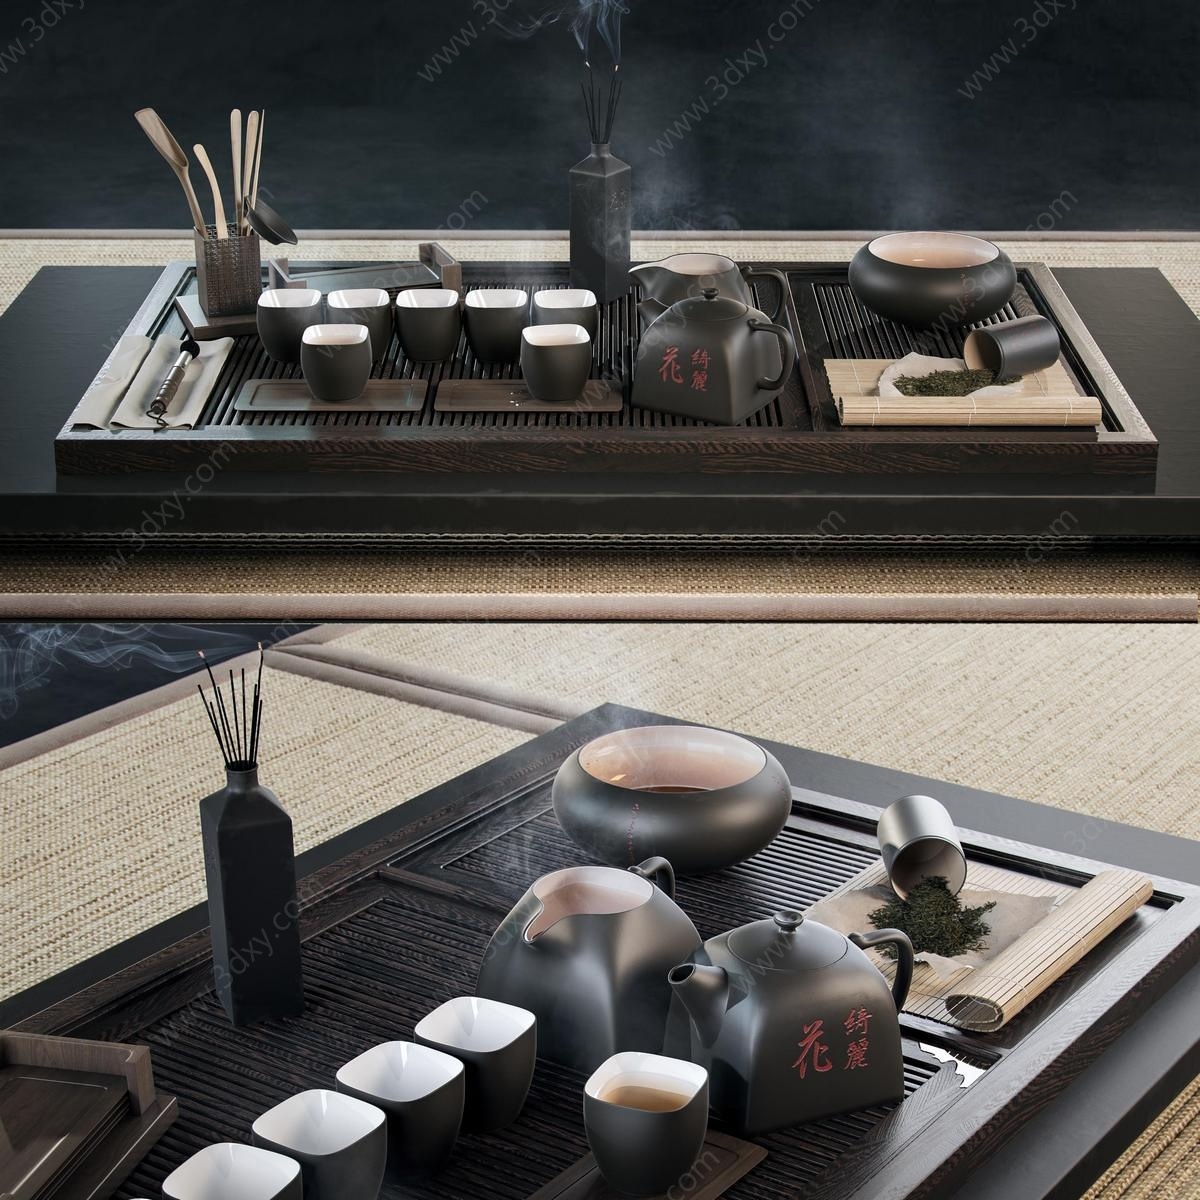 日式茶台茶具3D模型